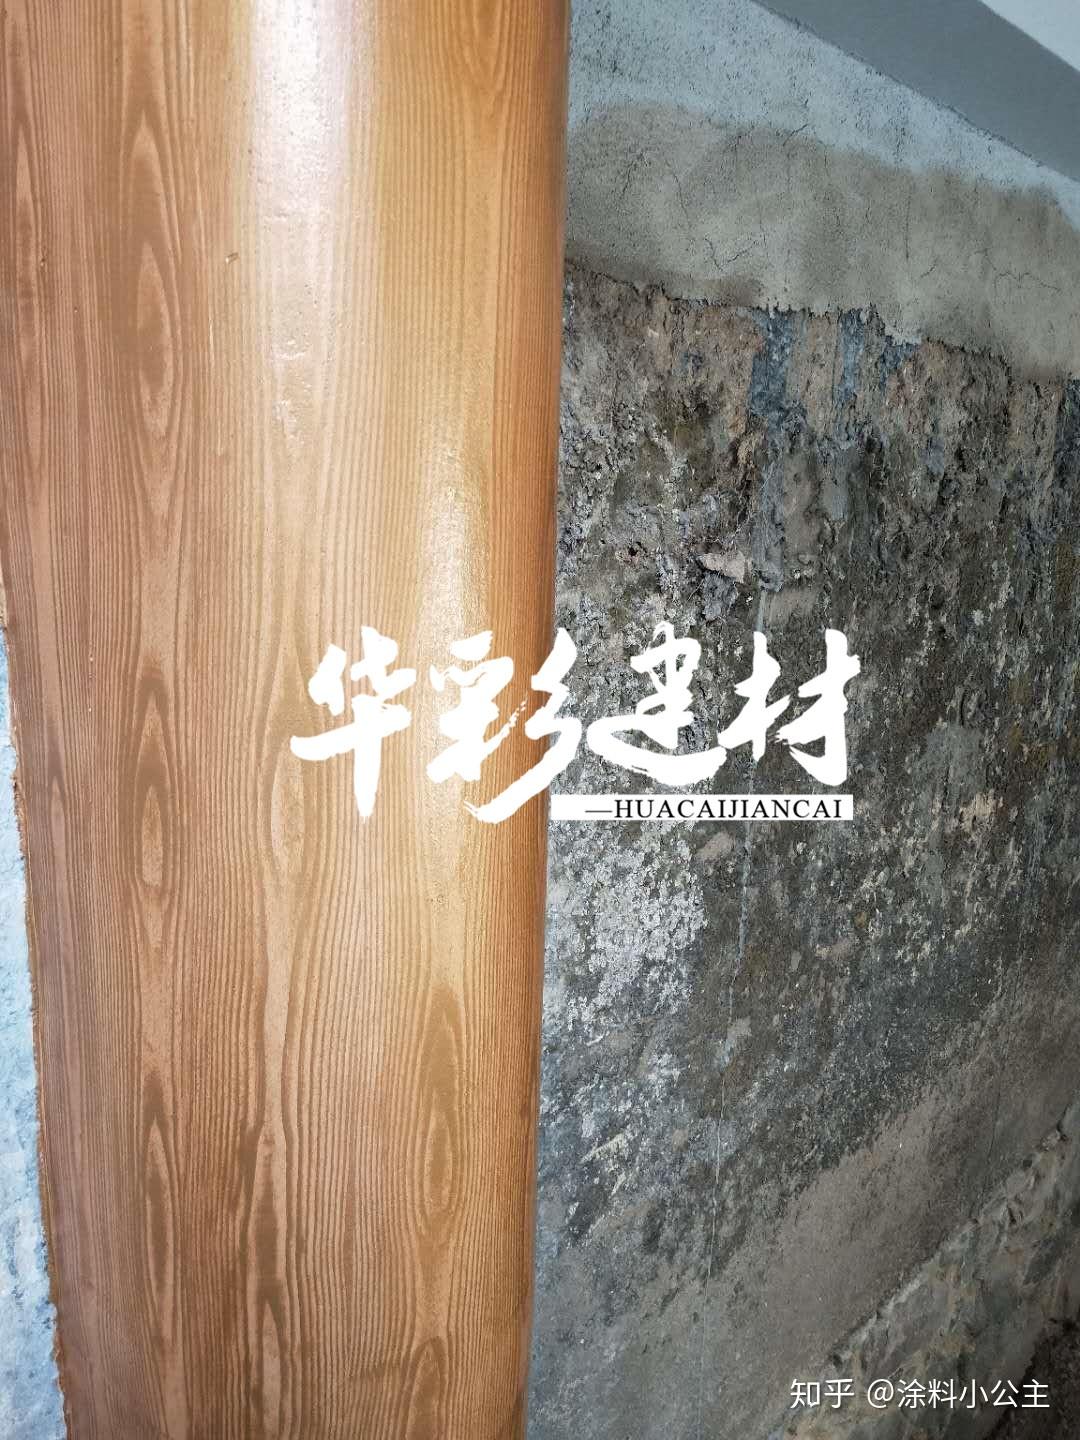 上海水泥柱仿木纹漆施工效果变木头 - 哔哩哔哩